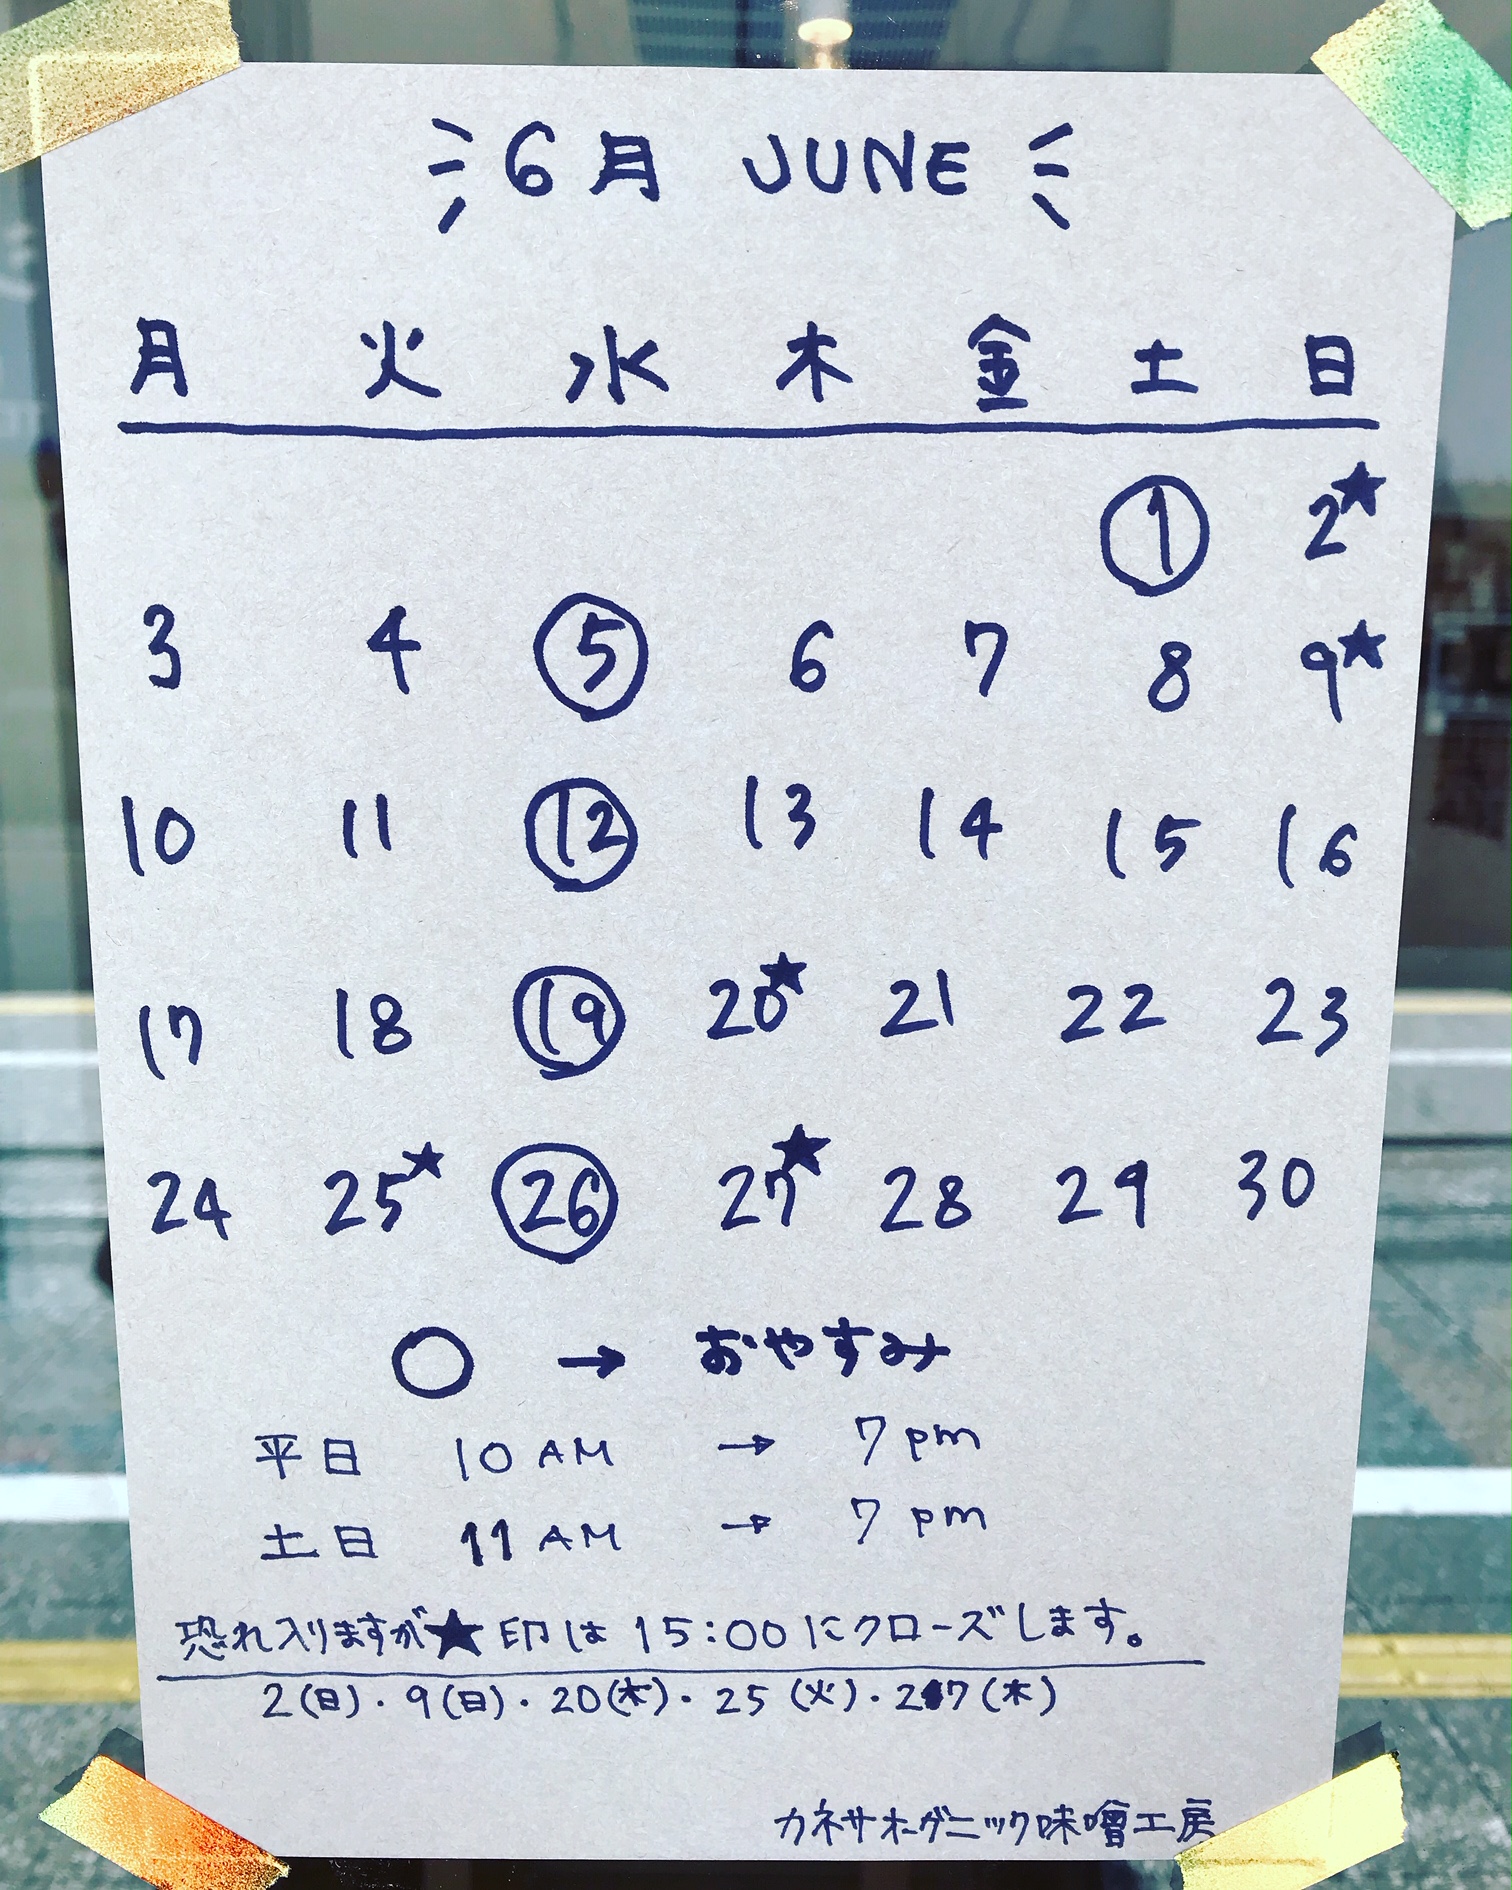 【2019年6月】松陰神社前店 営業カレンダー